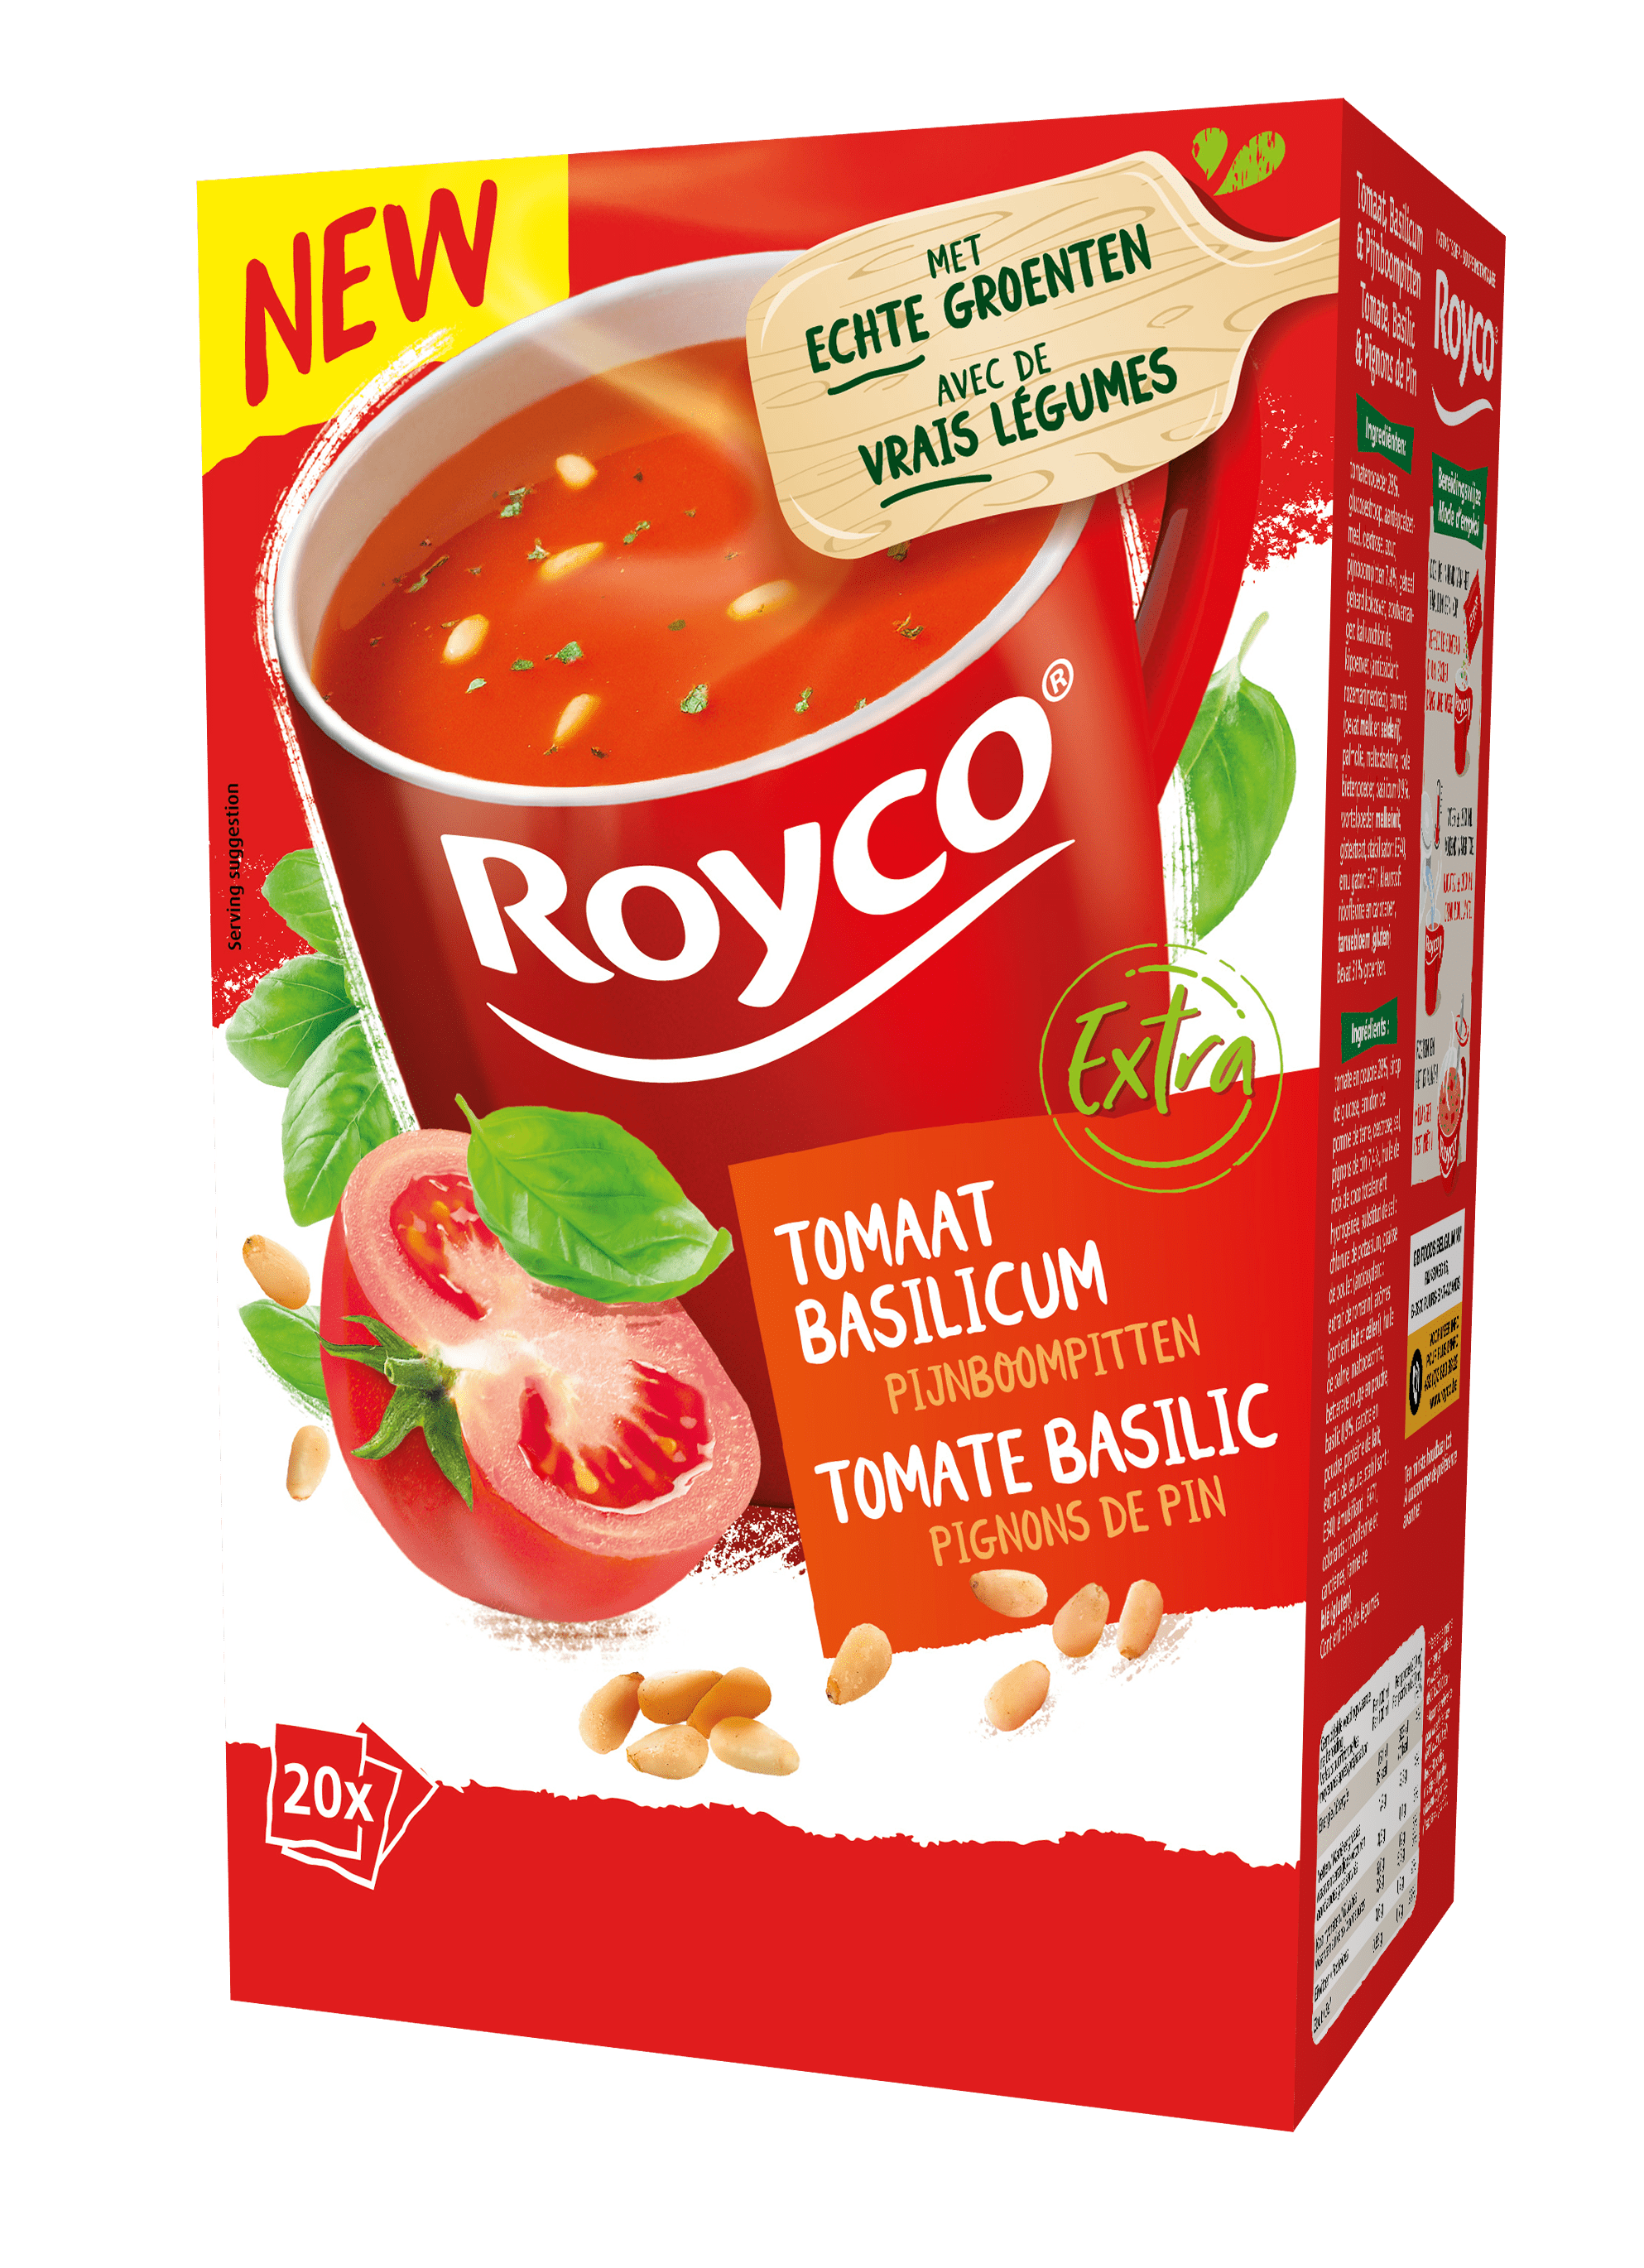 Royco Tomaat Basilicum Pijnboompitten